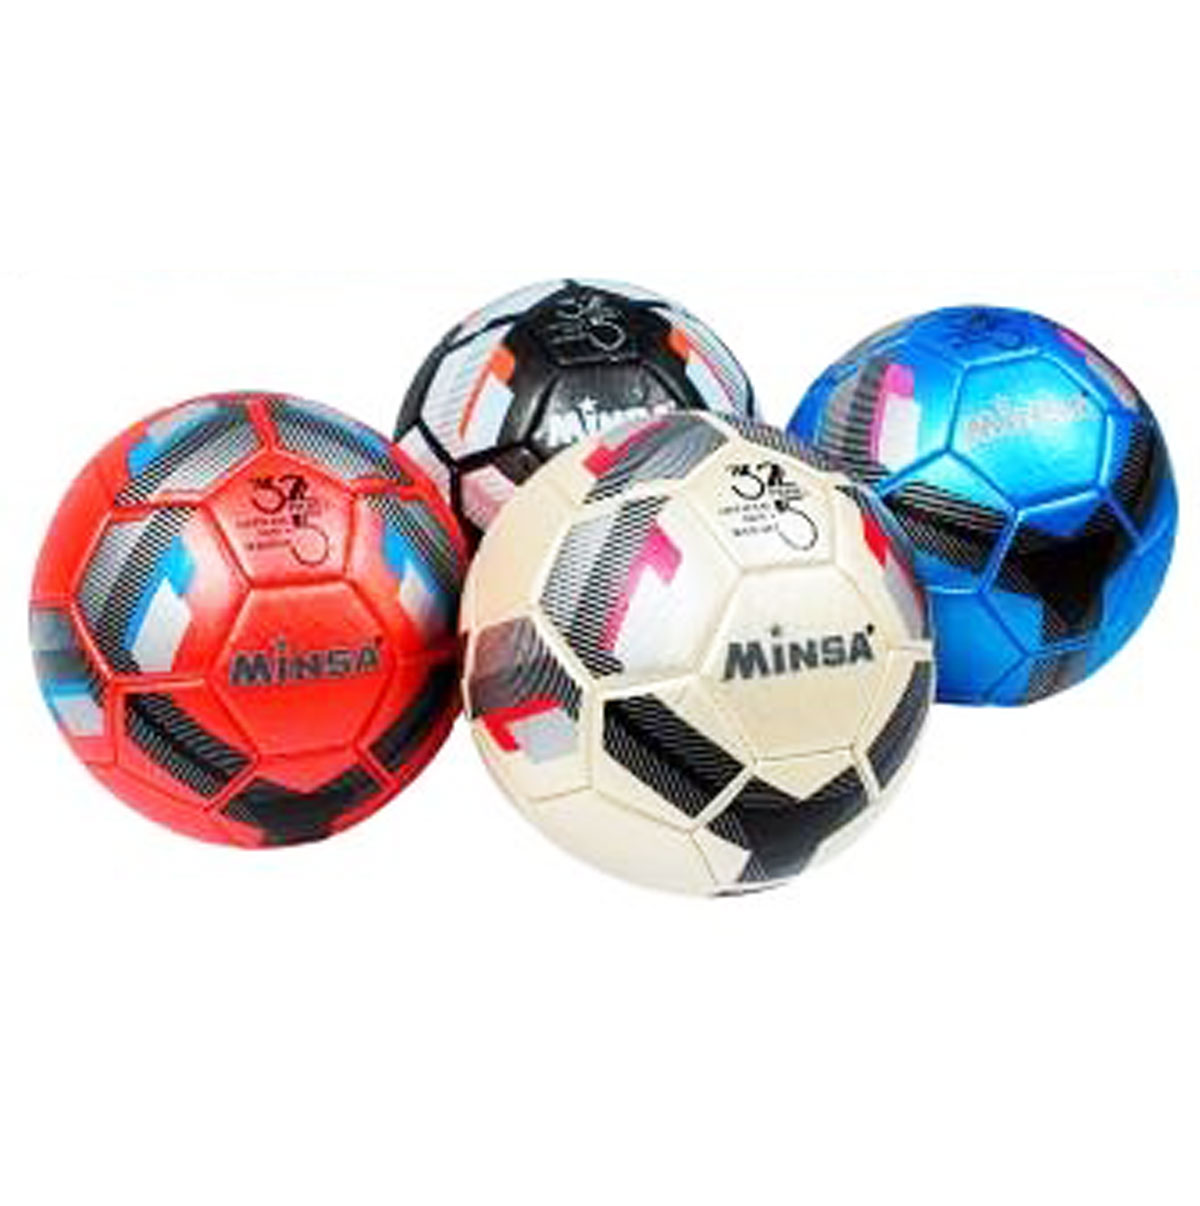 М'яч футбольний 'Minsa' 4 види